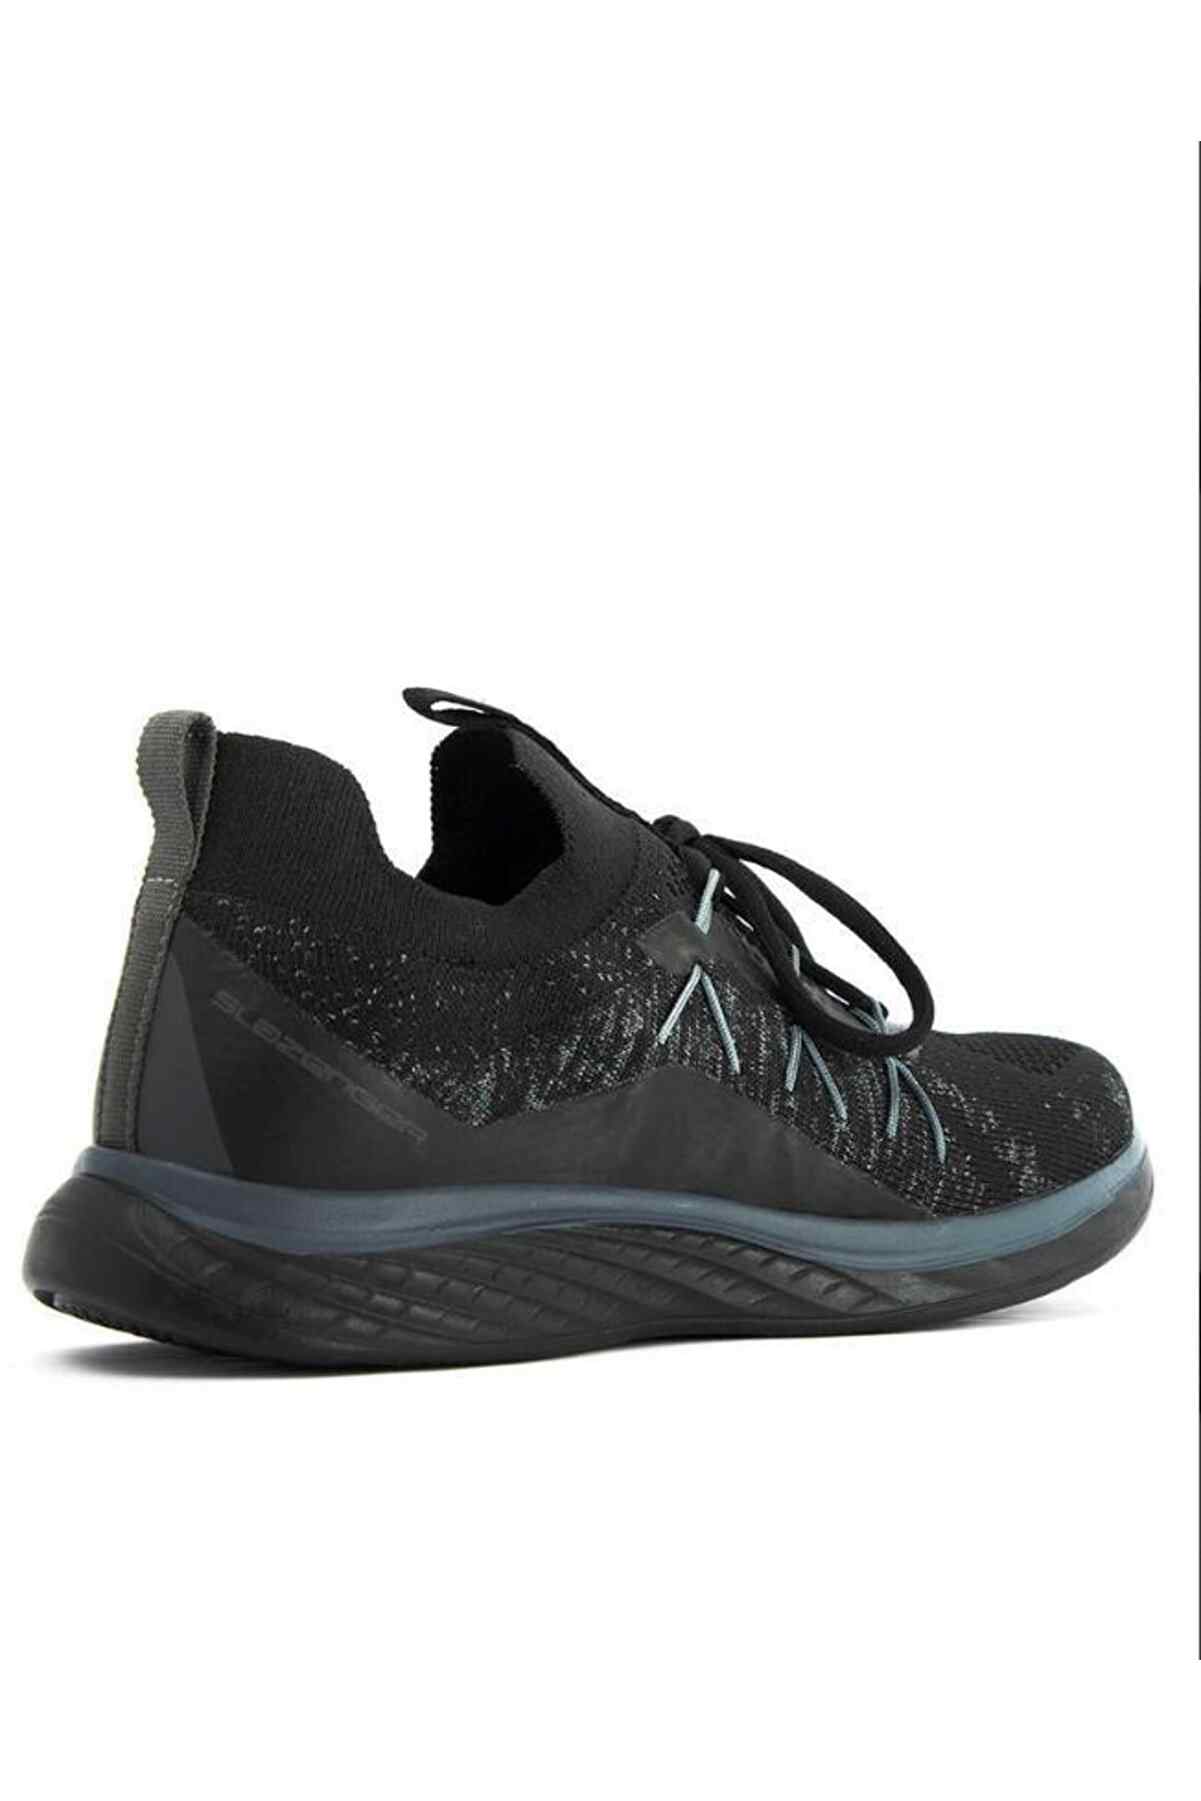 Slazenger Arizona Sneaker Kadın Ayakkabı Siyah